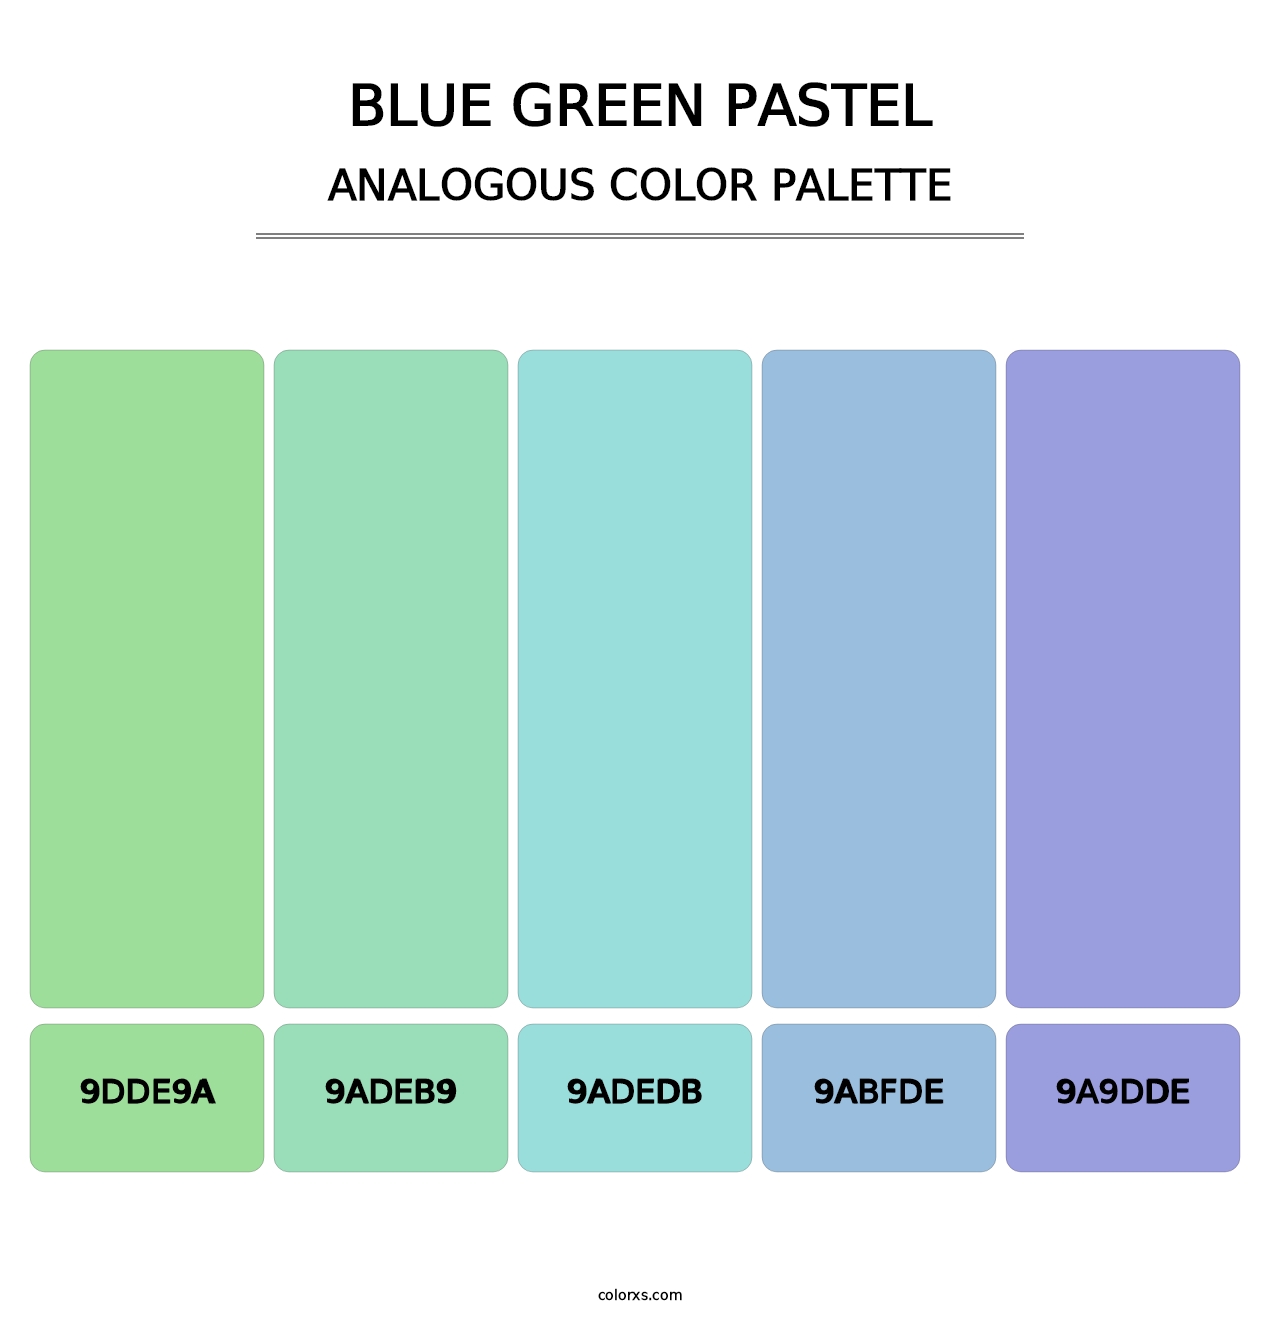 Blue Green Pastel - Analogous Color Palette